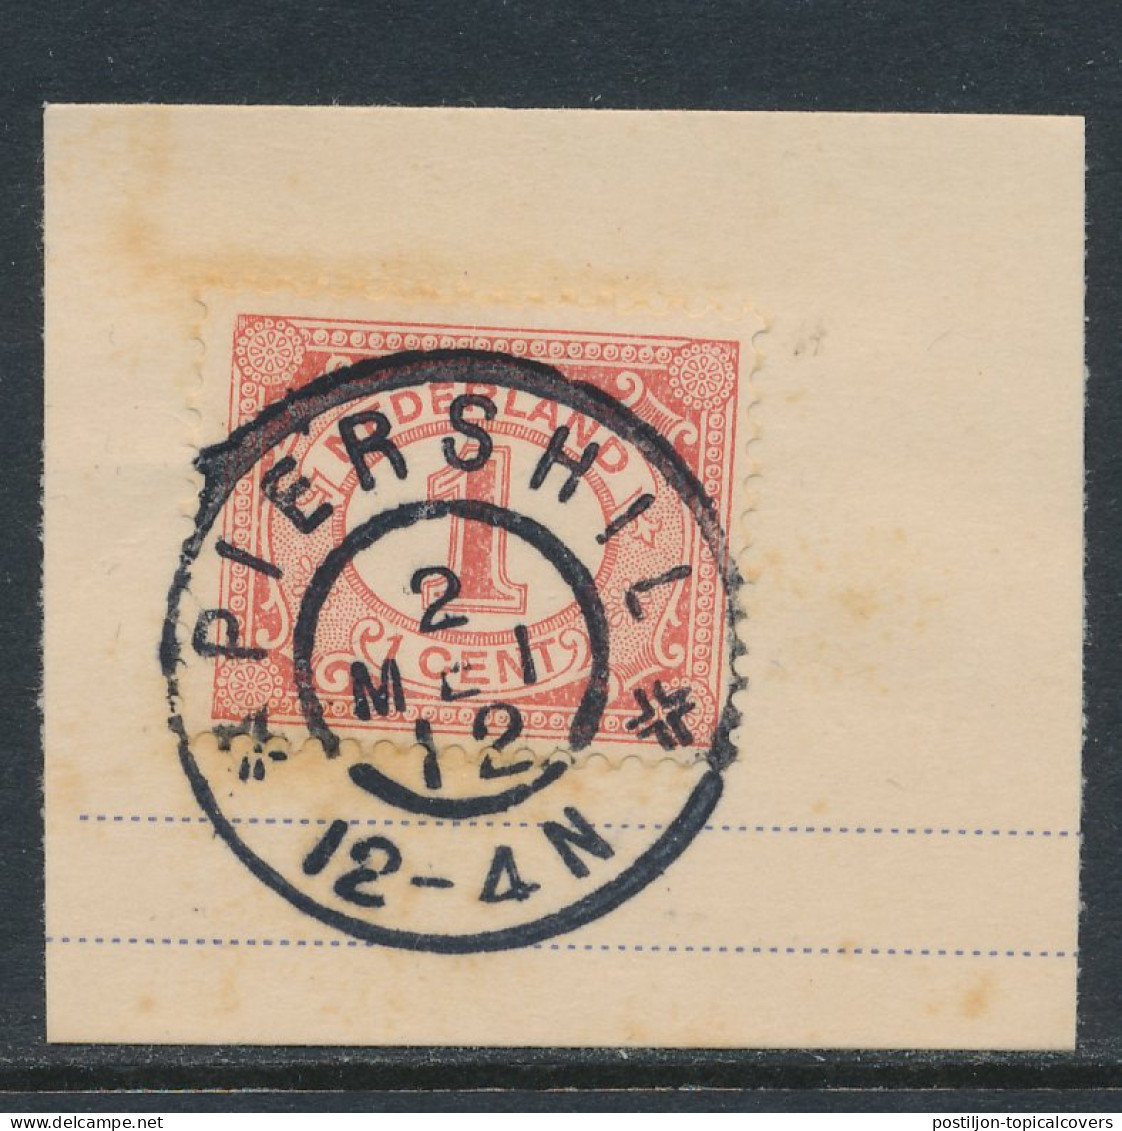 Grootrondstempel Piershil 1912 - Poststempels/ Marcofilie